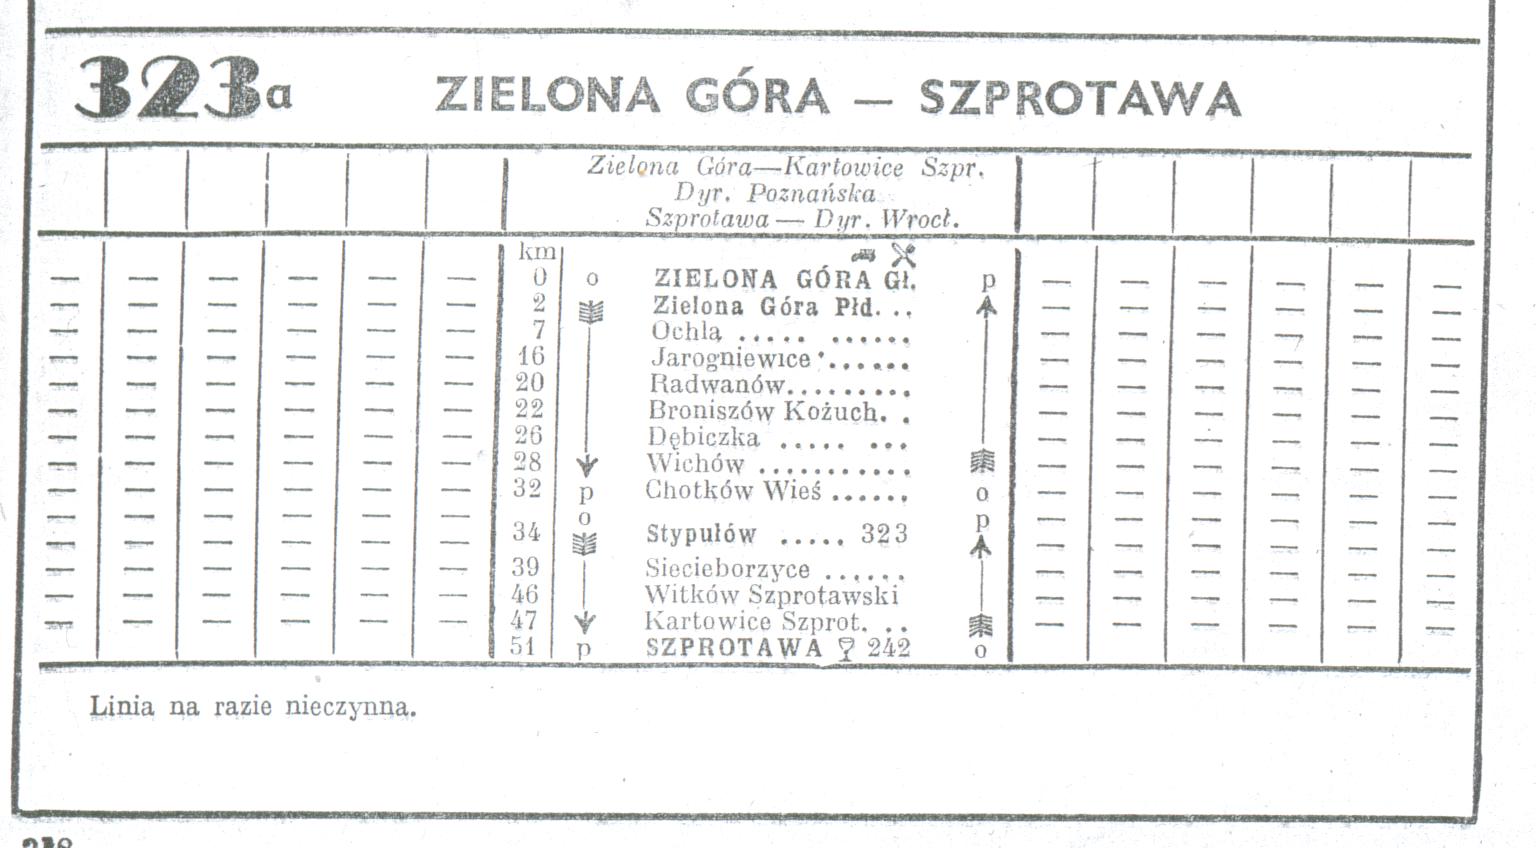 Ostatni rozkład jazdy PKP, w którym występuje linia zielonogórsko - szprotawska, z sezonu 1950-51 r. Zbiory Mieczysław J. Bonisławskiego.